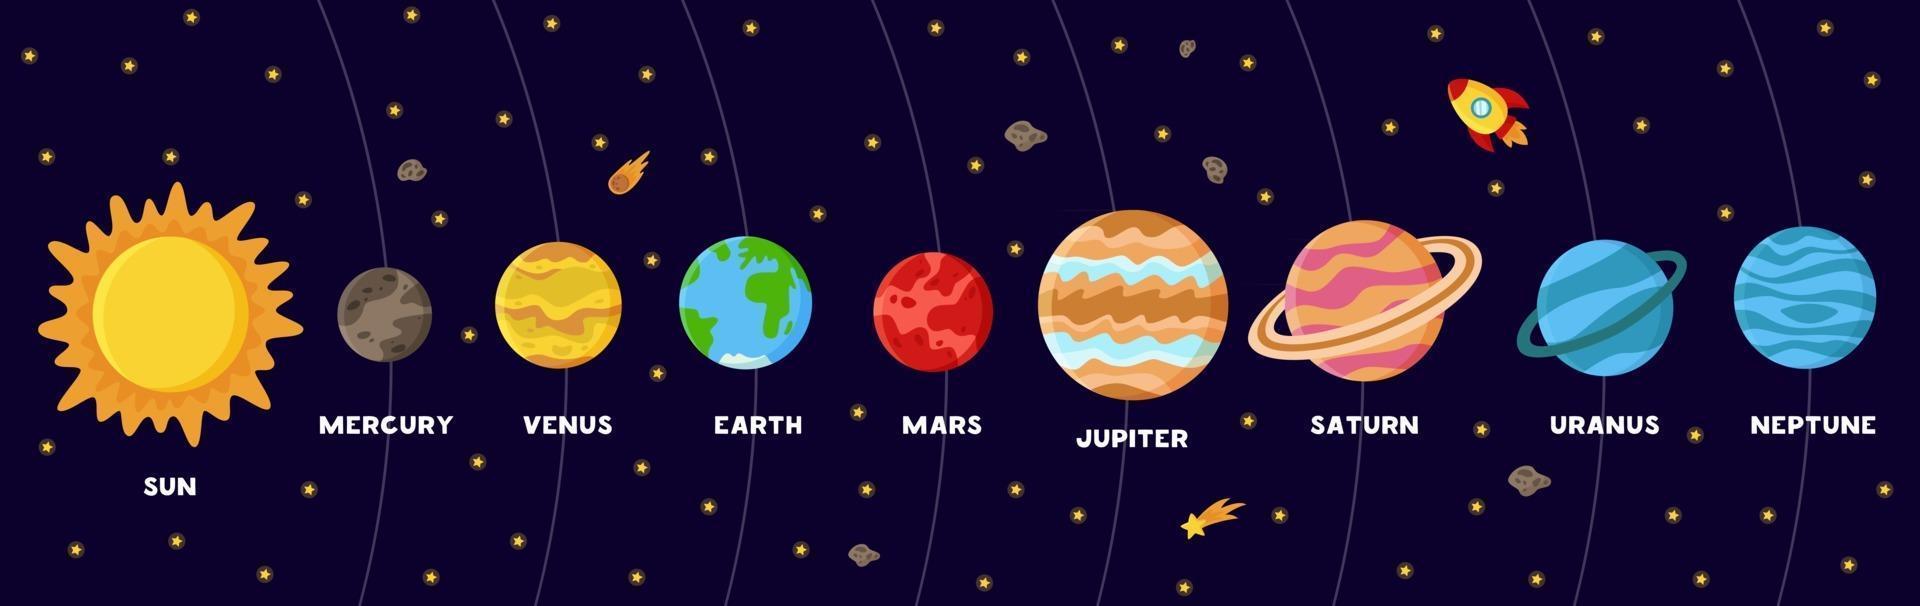 cartel colorido con planetas del sistema solar. esquema del sistema solar vector